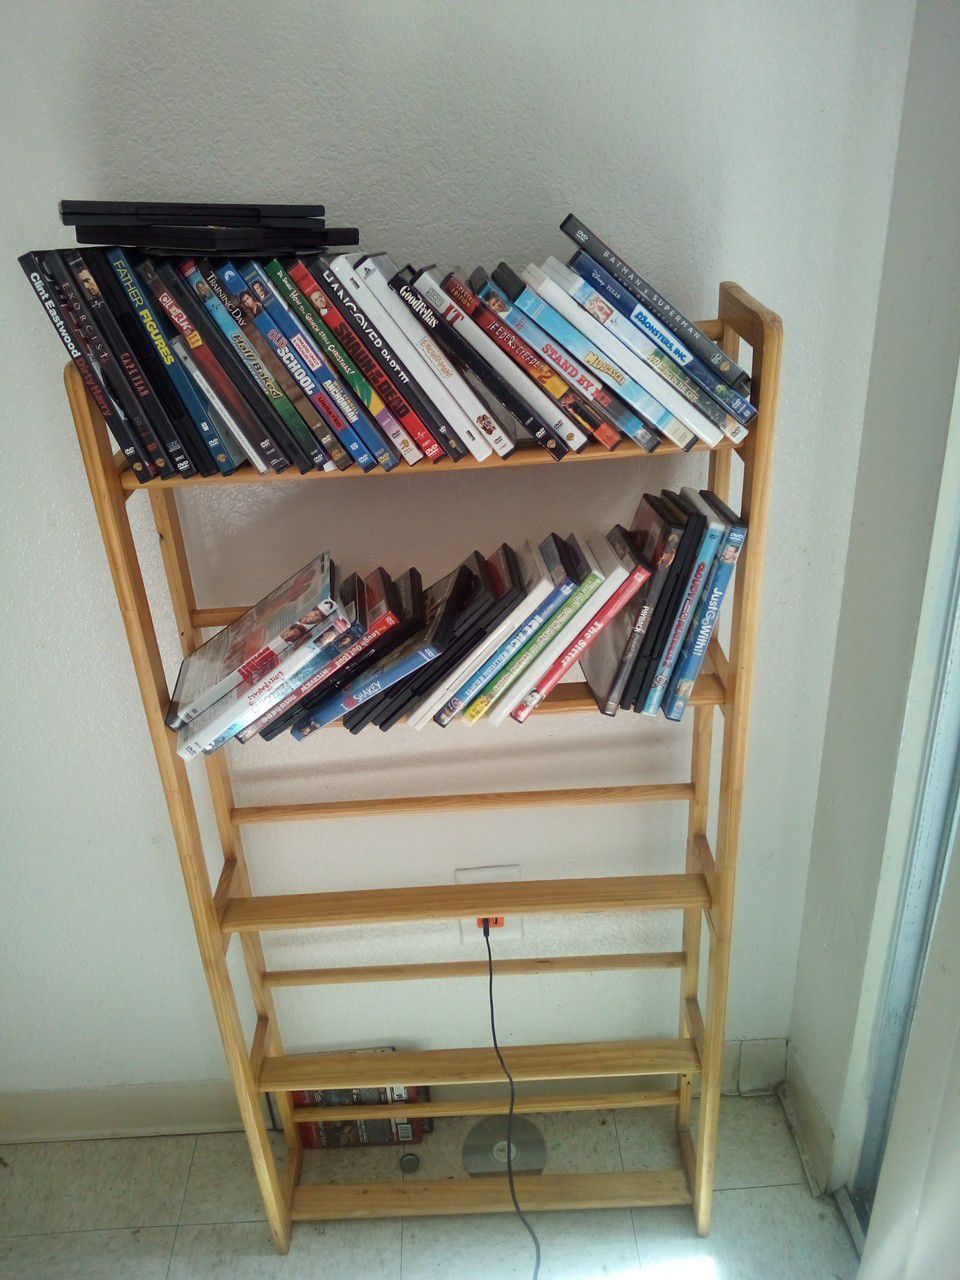 Bookshelves or movie shelve